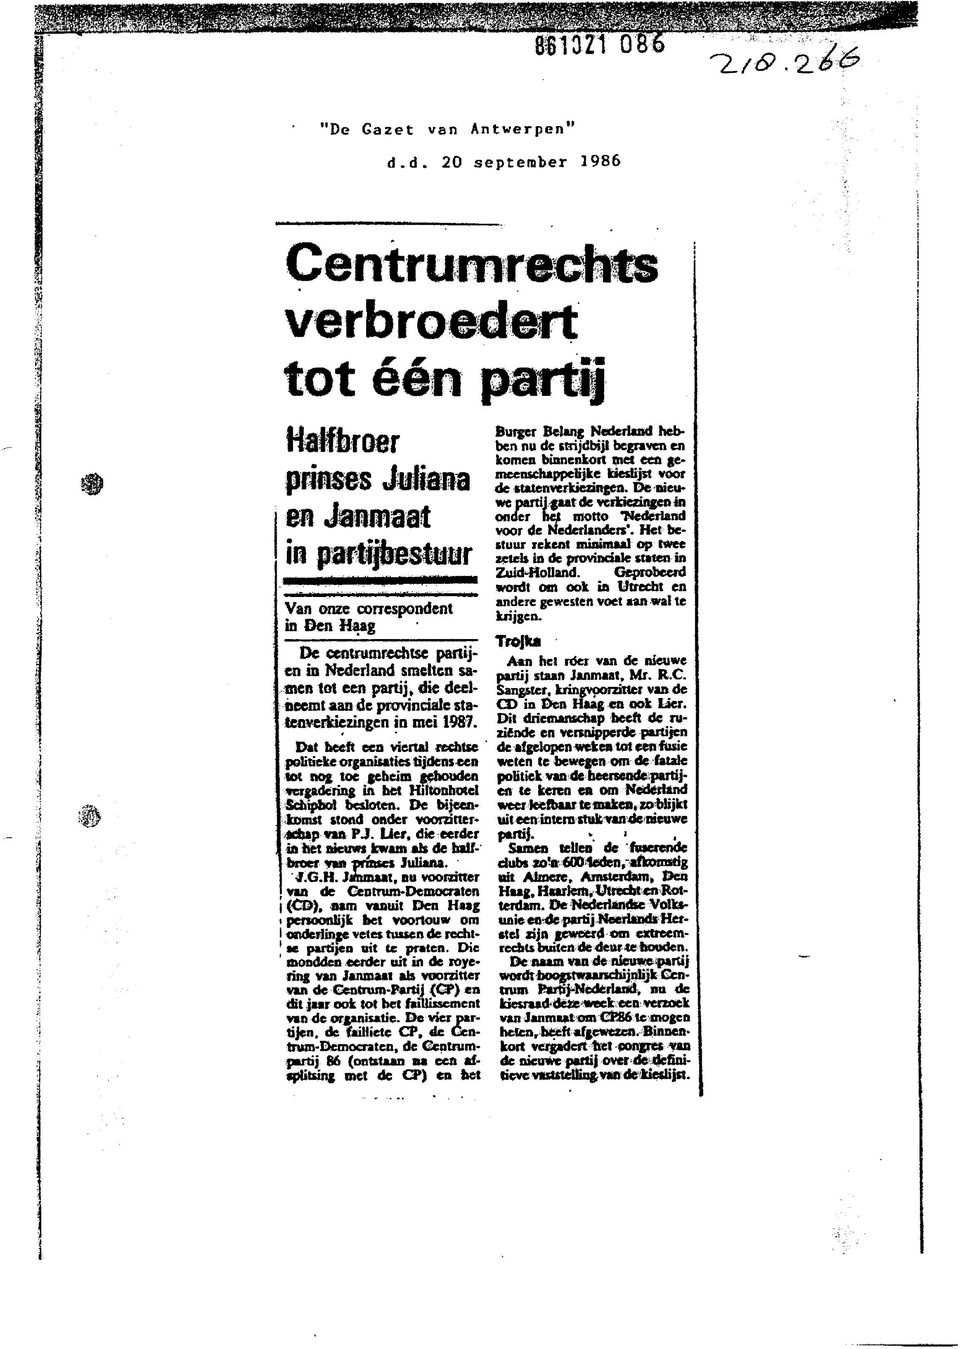 provinciale statenverkiezingen in mei 1987. Dat heeft een viertal rechtse politieke organisaties tijdens een tot nog toe geheim eenouden vergadering in het Hiltonhotel Schiphol besloten.